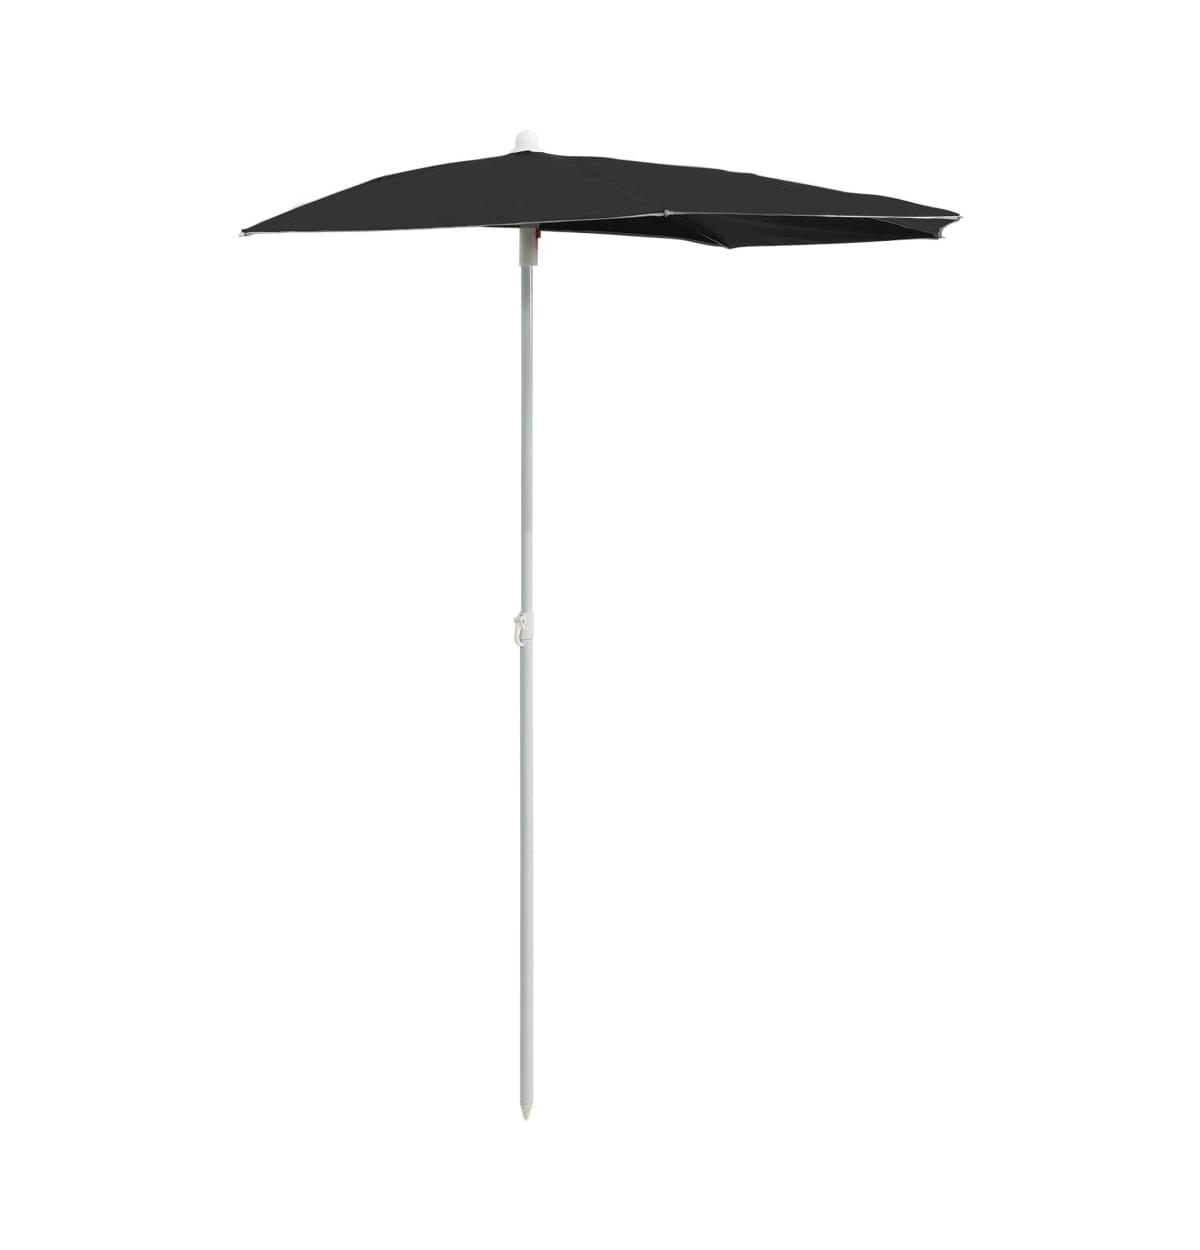 Garden Half Parasol with Pole 70.9"x35.4" Black - Black